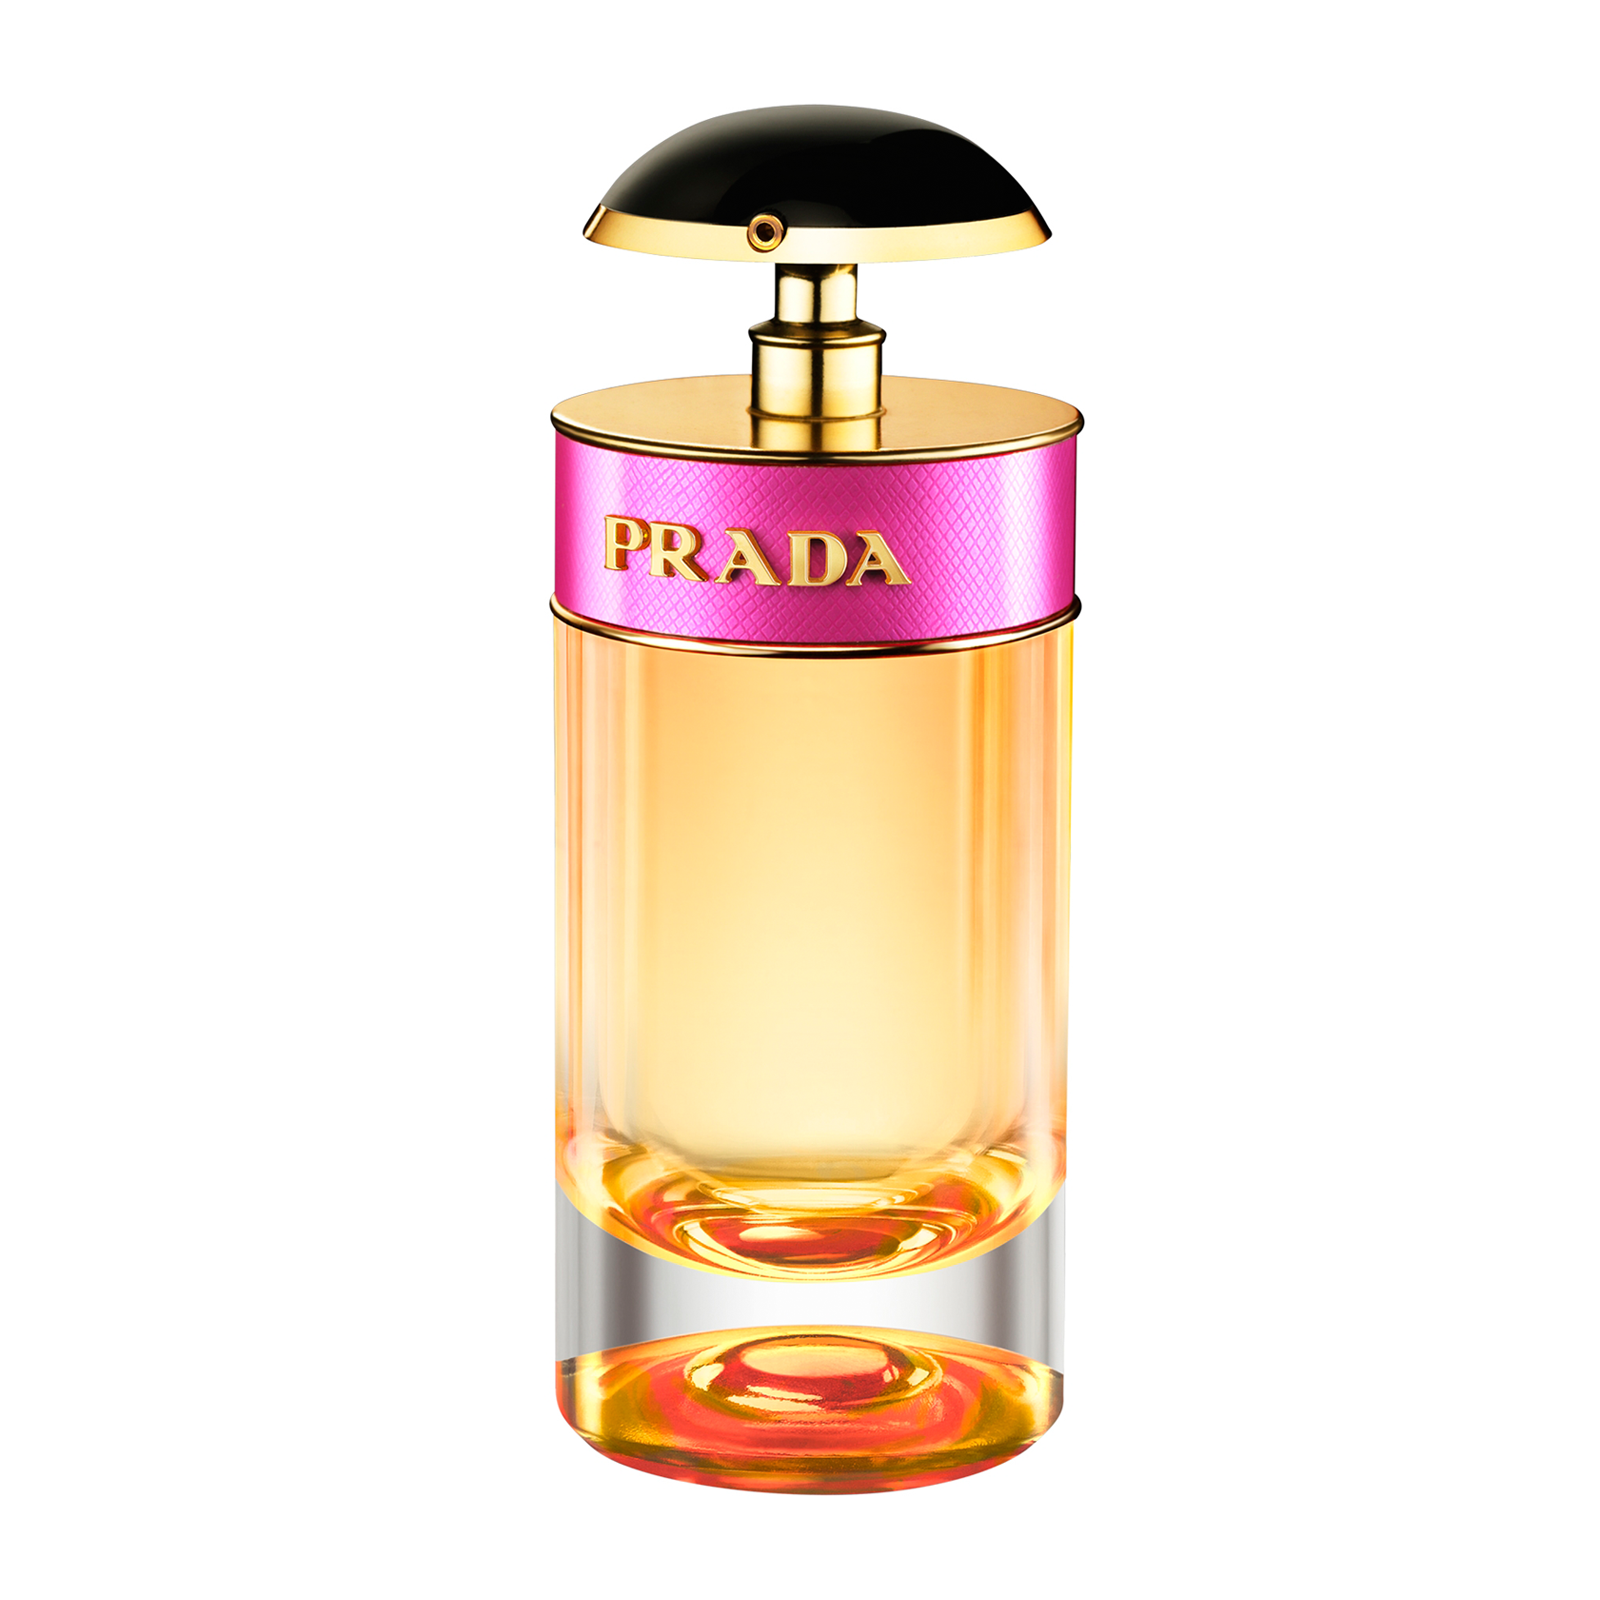 Prada Candy Eau De Parfum Spray 50ml - feelunique.com